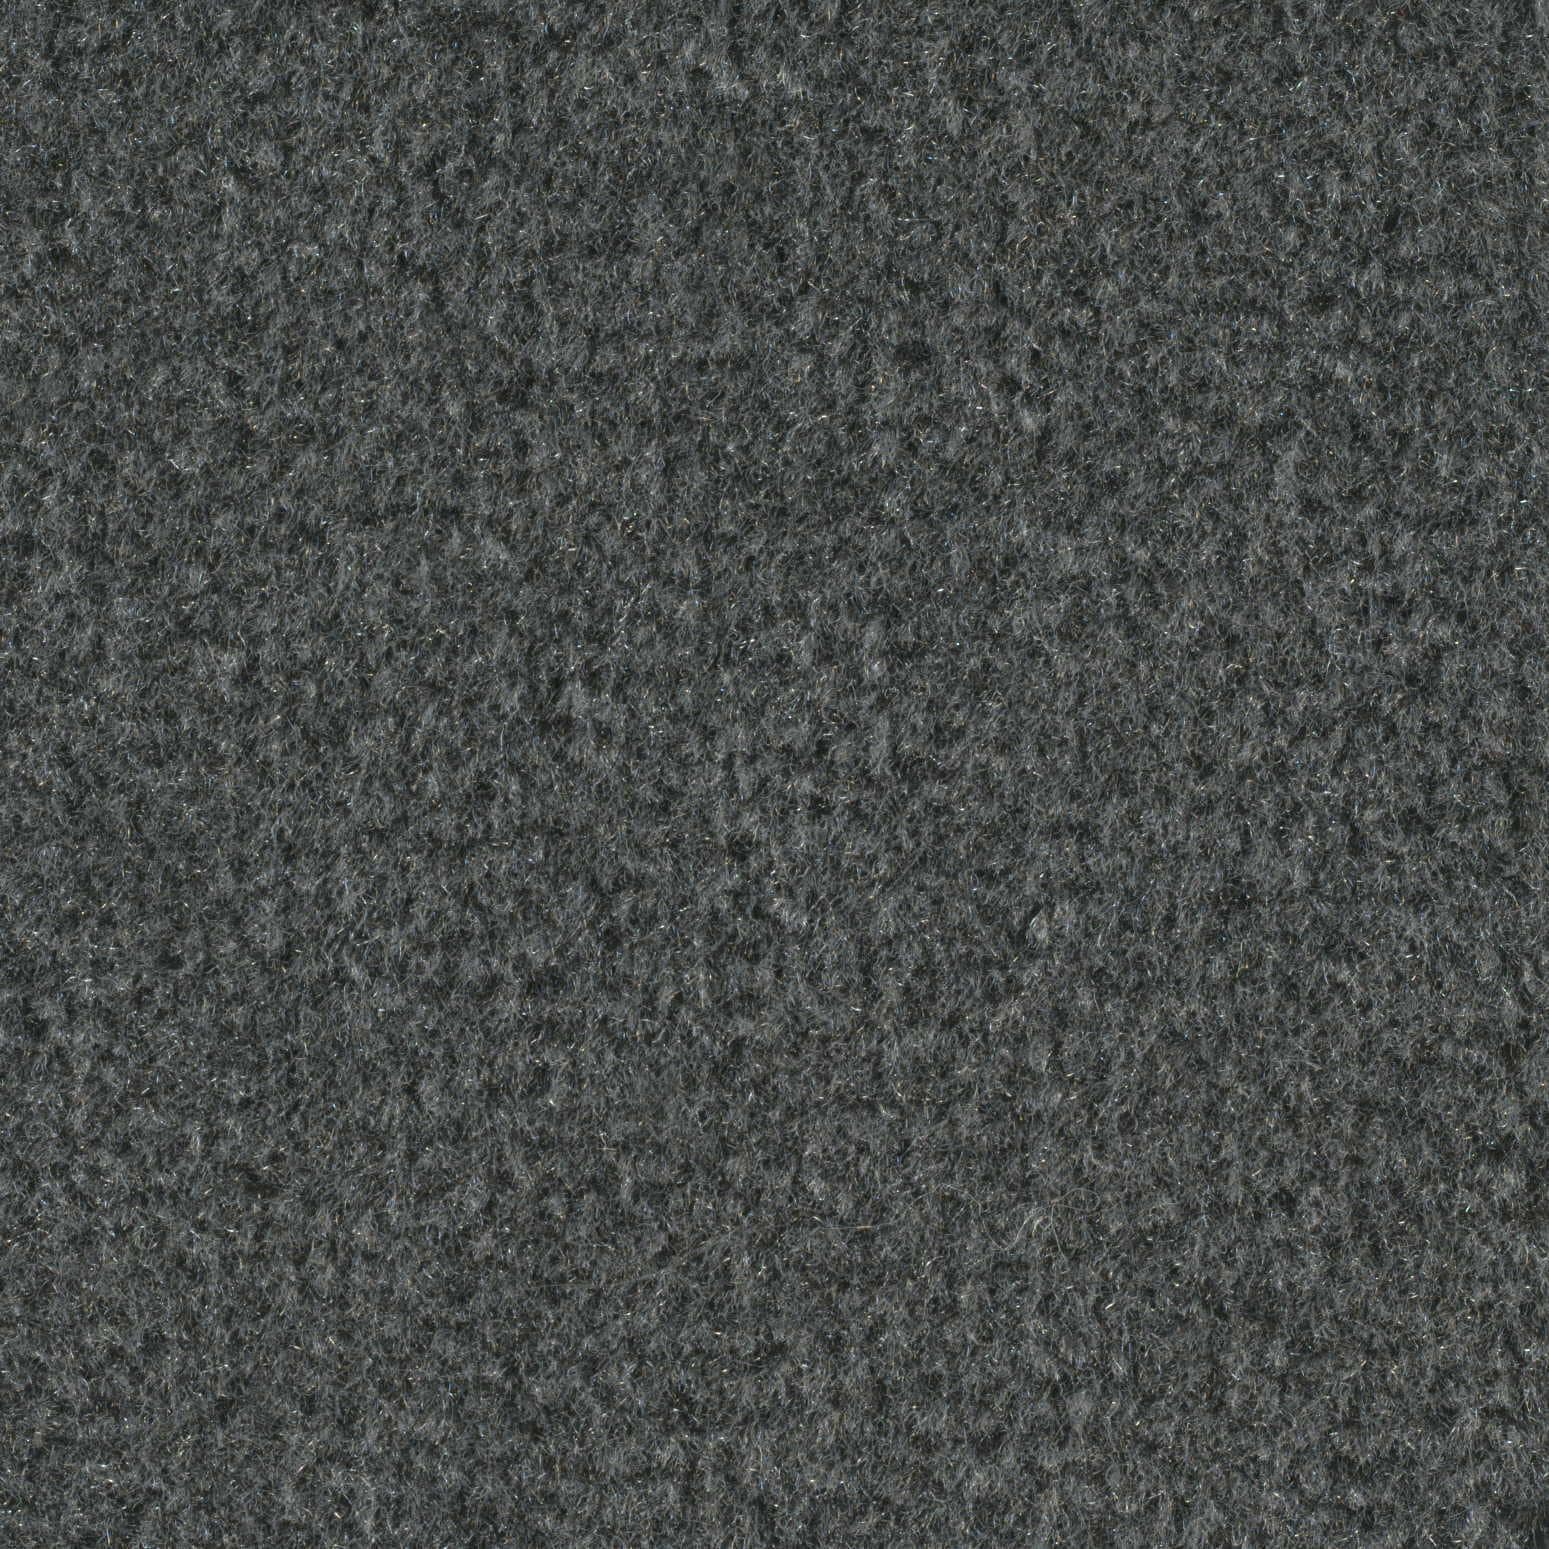 Graystone Plush Carpet Indoor Or